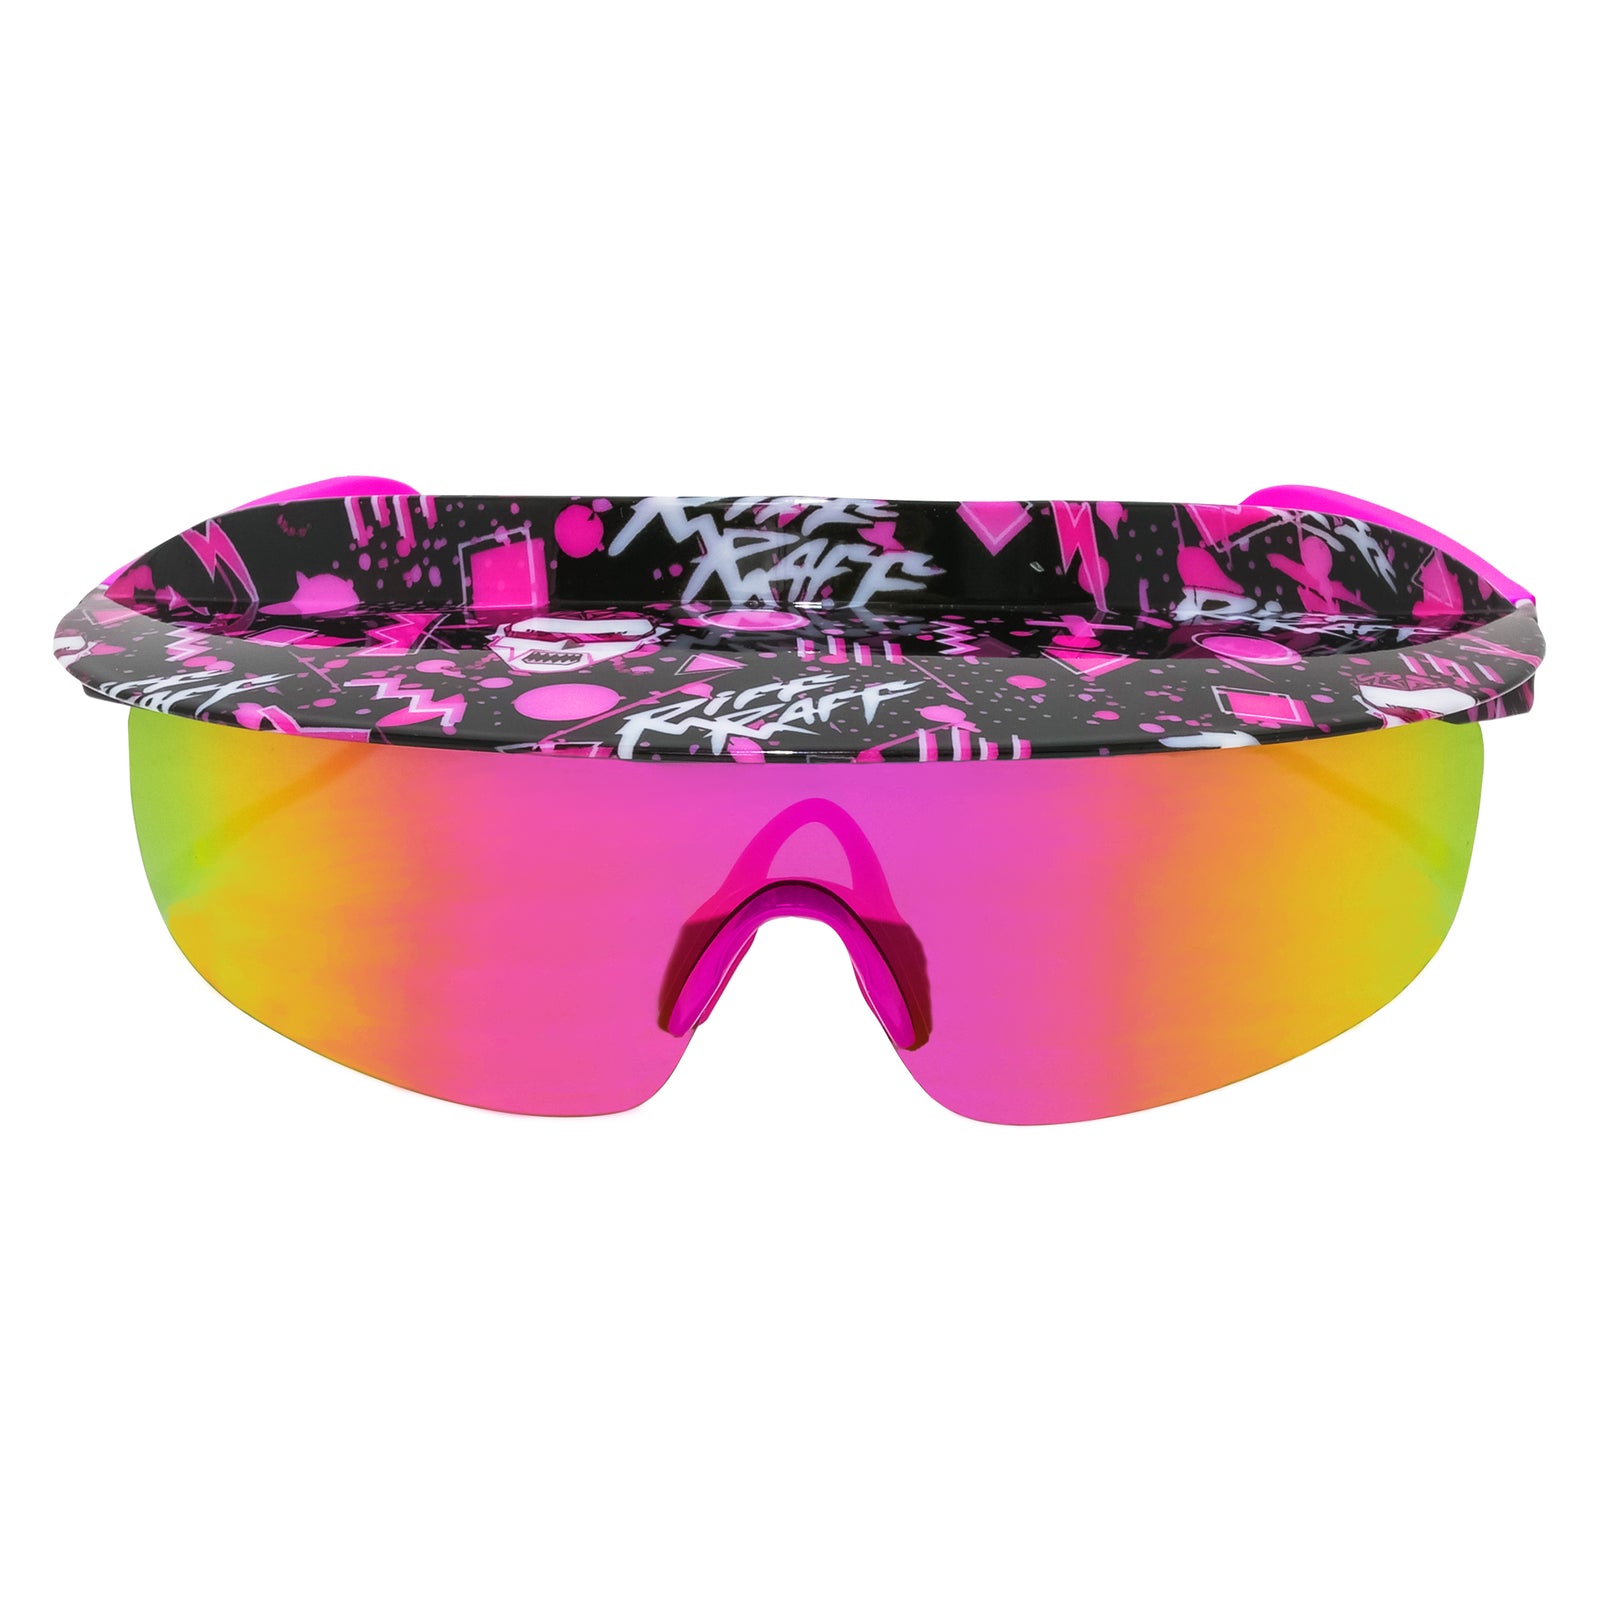 Flamingo Visor Sunglasses B Gear - 80s Sunglasses - Shop Now